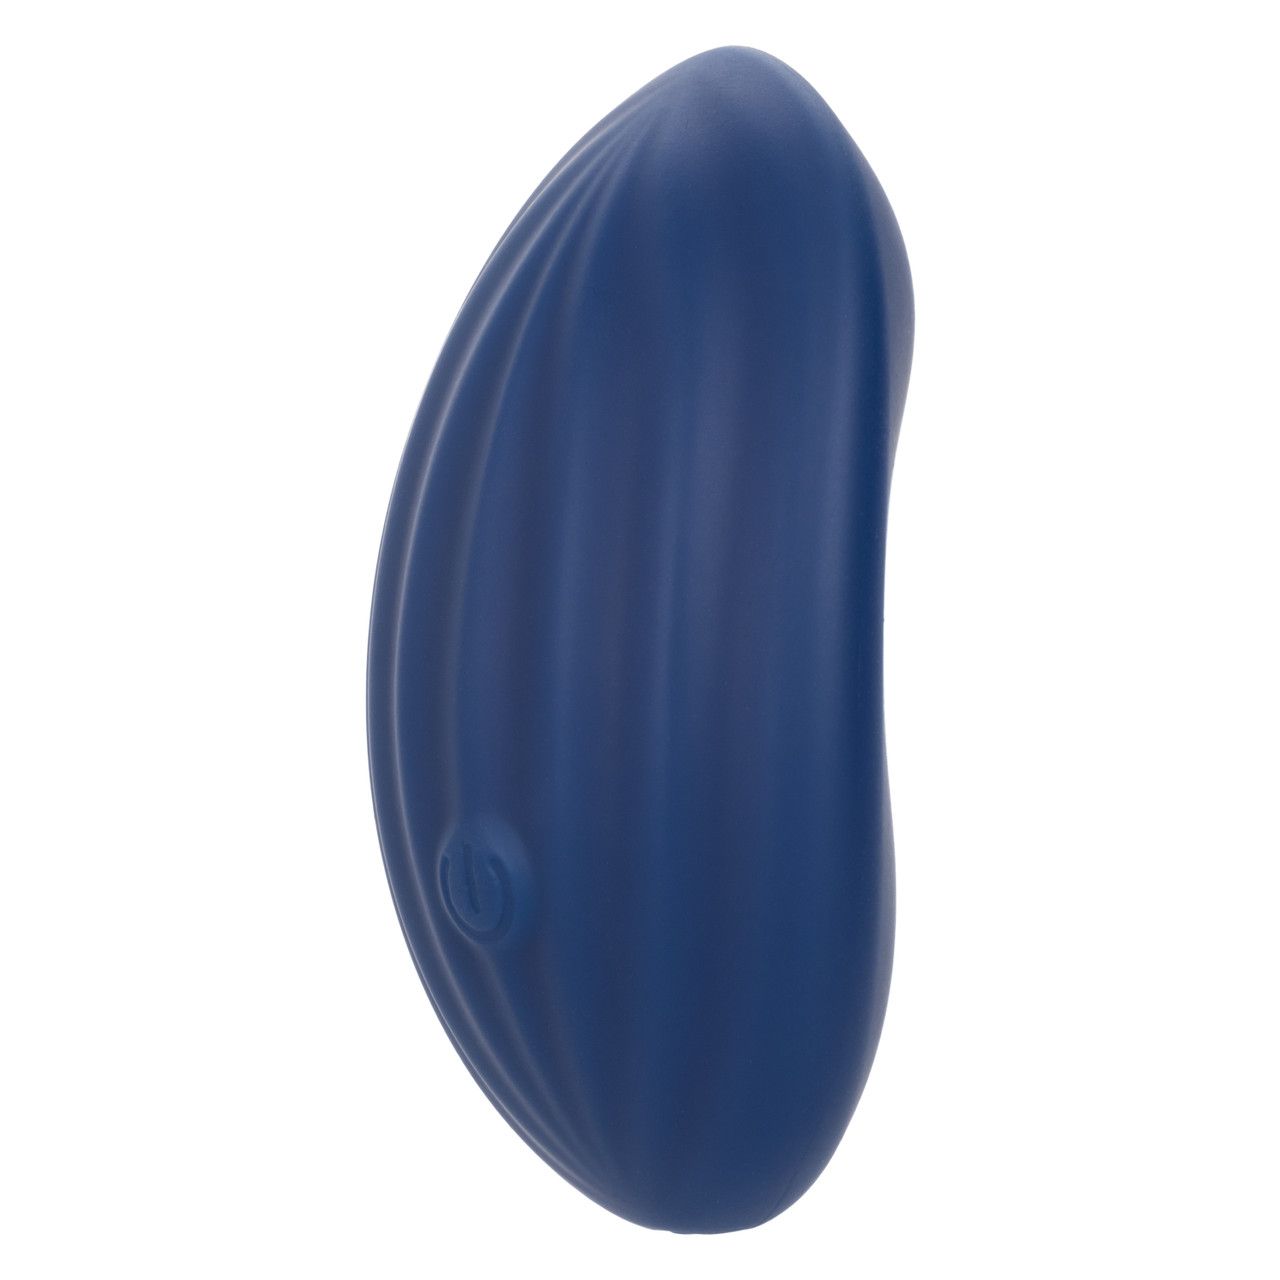 Cashmere Velvet Curve - это универсальный вибромассажер, который идеально подойдет для стимуляции любых внешних эрогенных зон. Благодаря удобному строению, небольшому размеру, и невероятно мягкому и эластичному материалу, игрушку удобно держать в руке. А ребристая поверхность обеспечит интенсивную и глубокую стимуляцию. Игрушка выполнена из высококачественного жидкого силикона, он имеет более мягкую, гладкую и прочную текстуру.<br><br> Вибромассажер является водонепроницаемым и имеет IPX7, поэтому его можно использовать в душе, а также погружать под воду на глубину до 1,5 не более чем на 30 минут. Массажер оснащен современным чипом памяти и запоминает последнюю использованную функцию, начиная работу именно с нее. Также вибратор имеет функцию дорожной блокировки. <br><br> Полное время зарядки составляет всего 1,5 часа. Время беспрерывной работы на самой высокой скорости составляет около 55 минут, на низкой около 80 минут. Управление игрушкой осуществляется с помощью одной кнопки на корпусе. Ширина - 6,25 см.